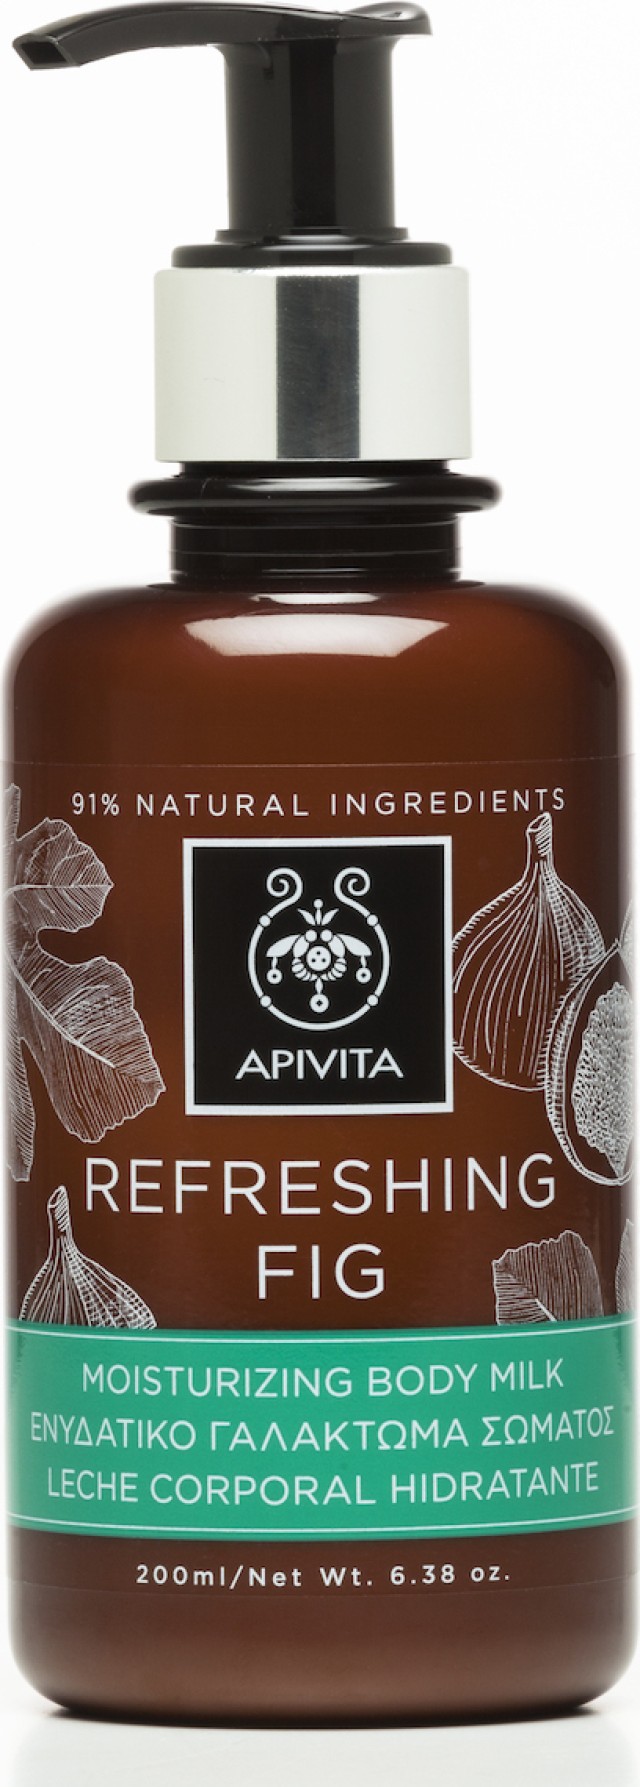 Apivita Refreshing Fig Ενυδατικό Γαλάκτωμα Σώματος 200ml